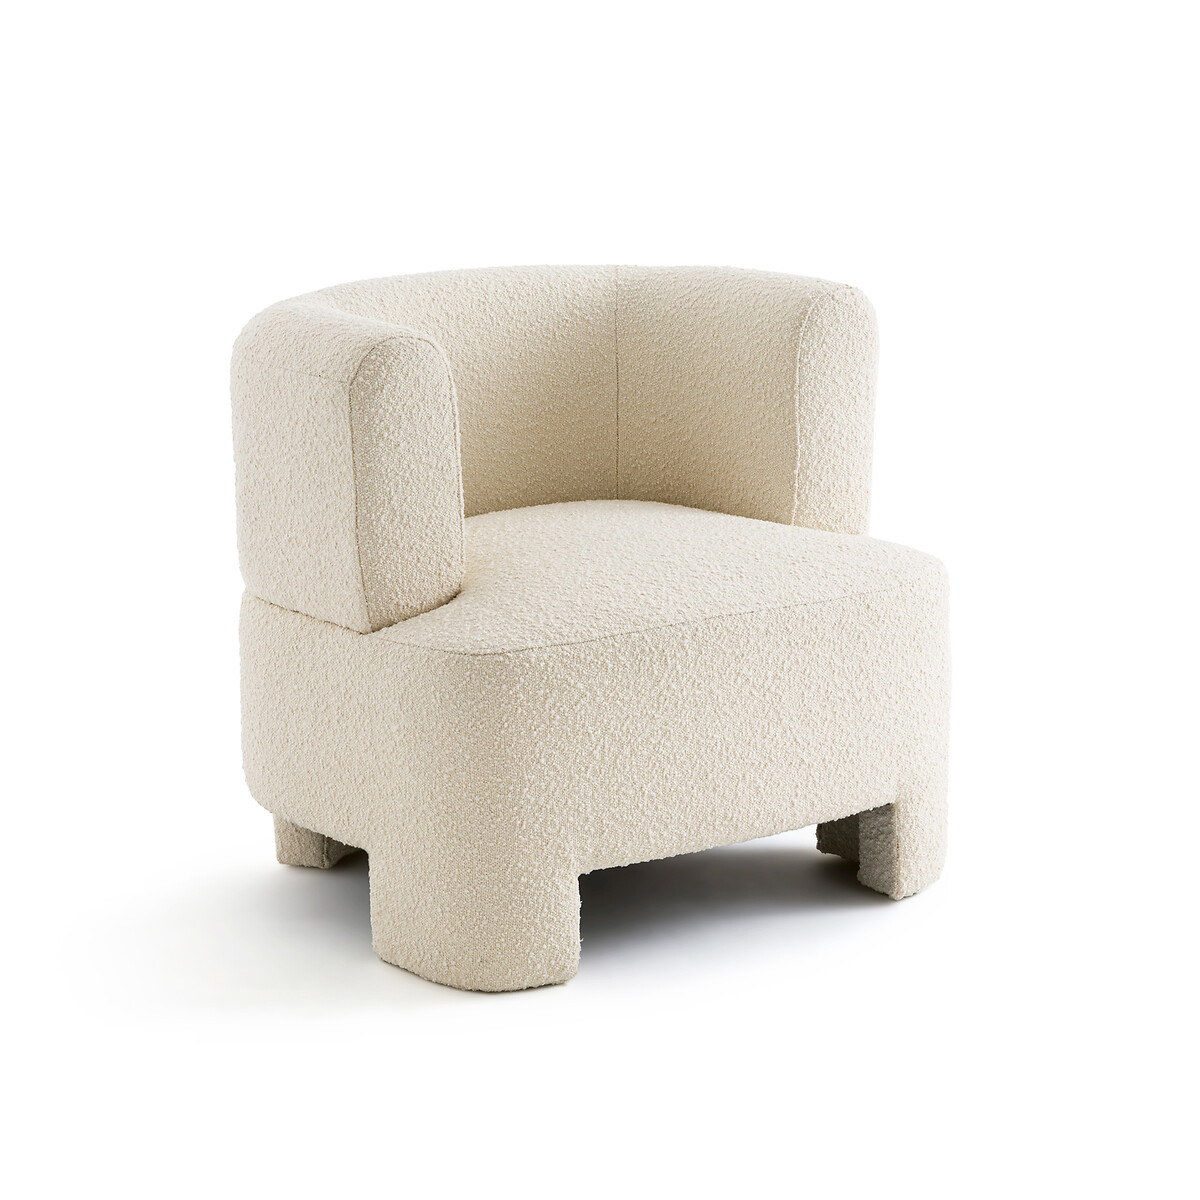 Кресло AM.PM Кресло Из ткани буклетт маленькая модель Darrel единый размер бежевый - фото 1